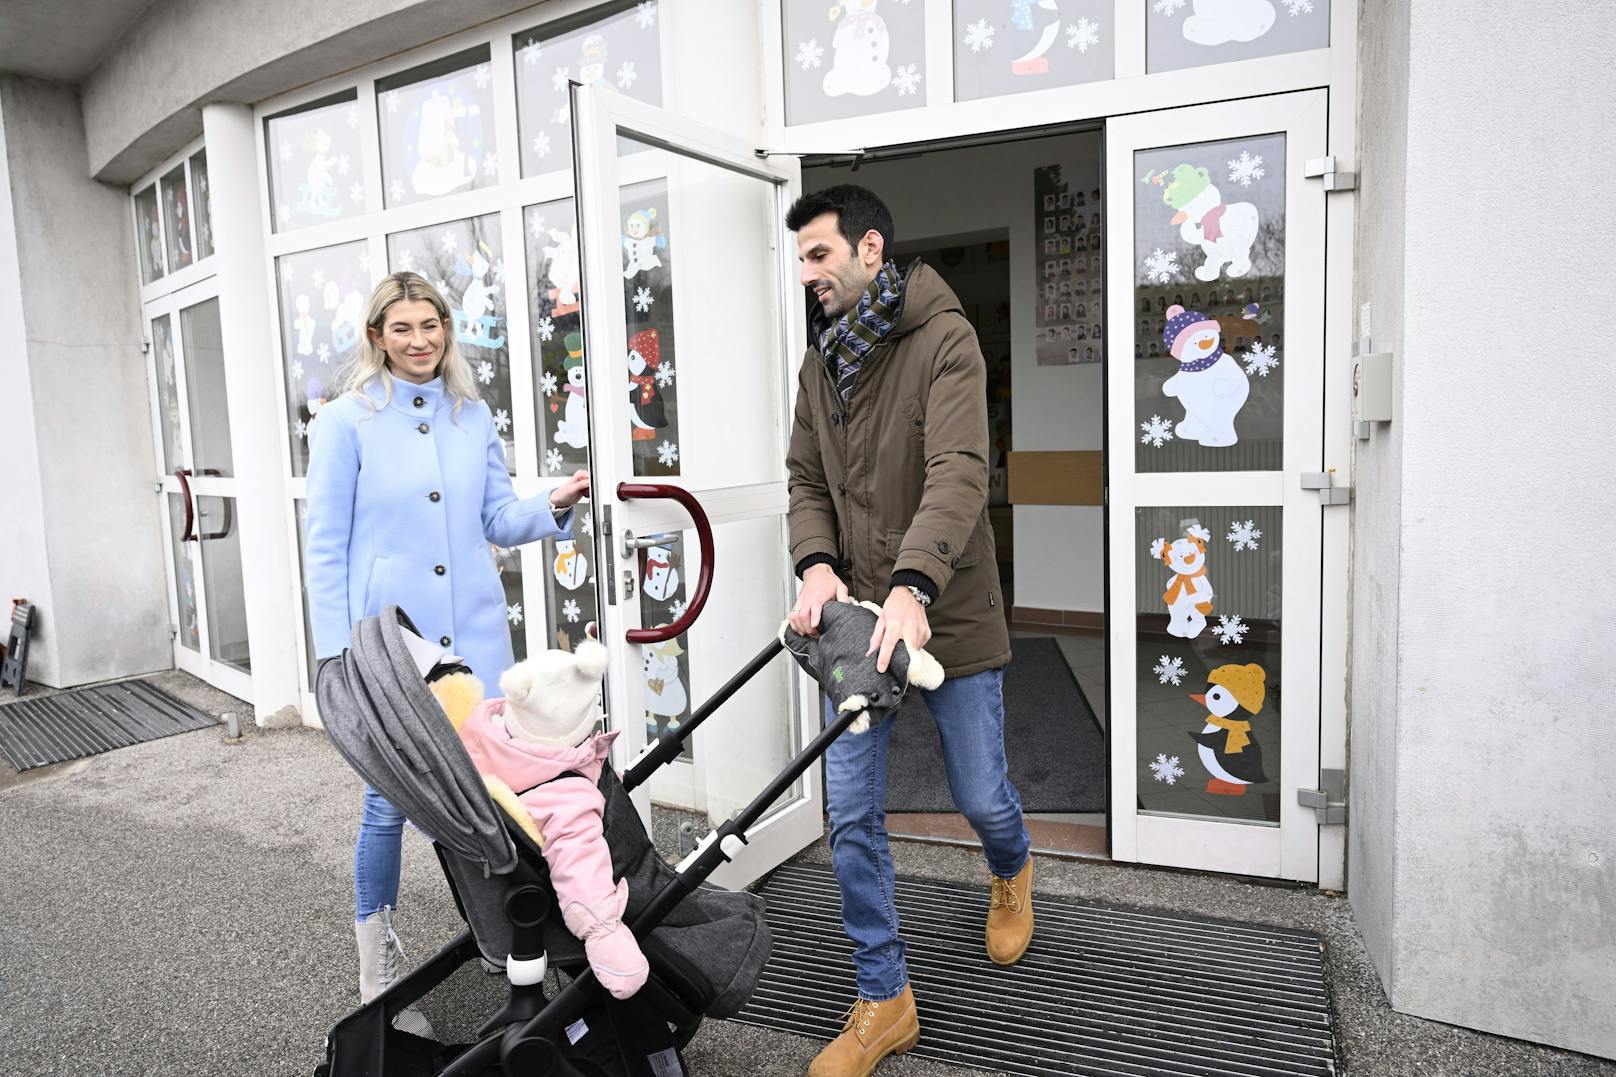 FPÖ-Spitzenkandidat Udo Landbauer (r.) mit Ehefrau Simone und Kind. Der Wahlzettel wurde ausgefüllt.